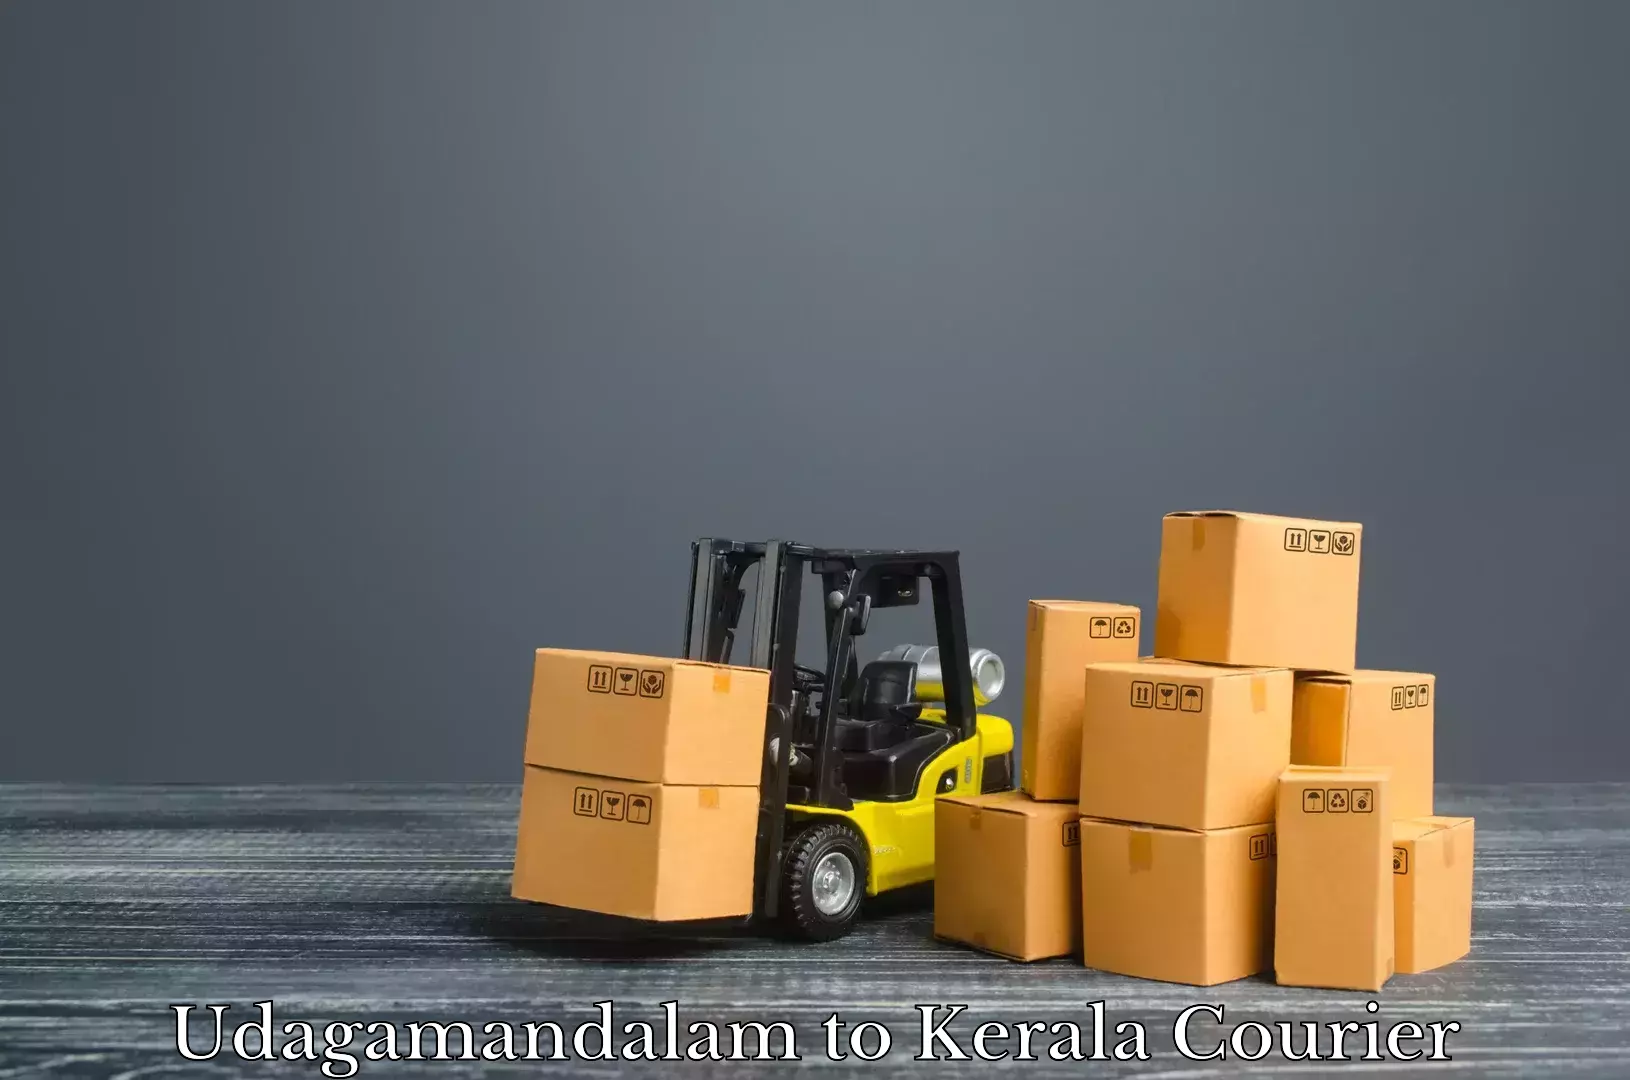 Luggage shipment specialists Udagamandalam to Mundakayam